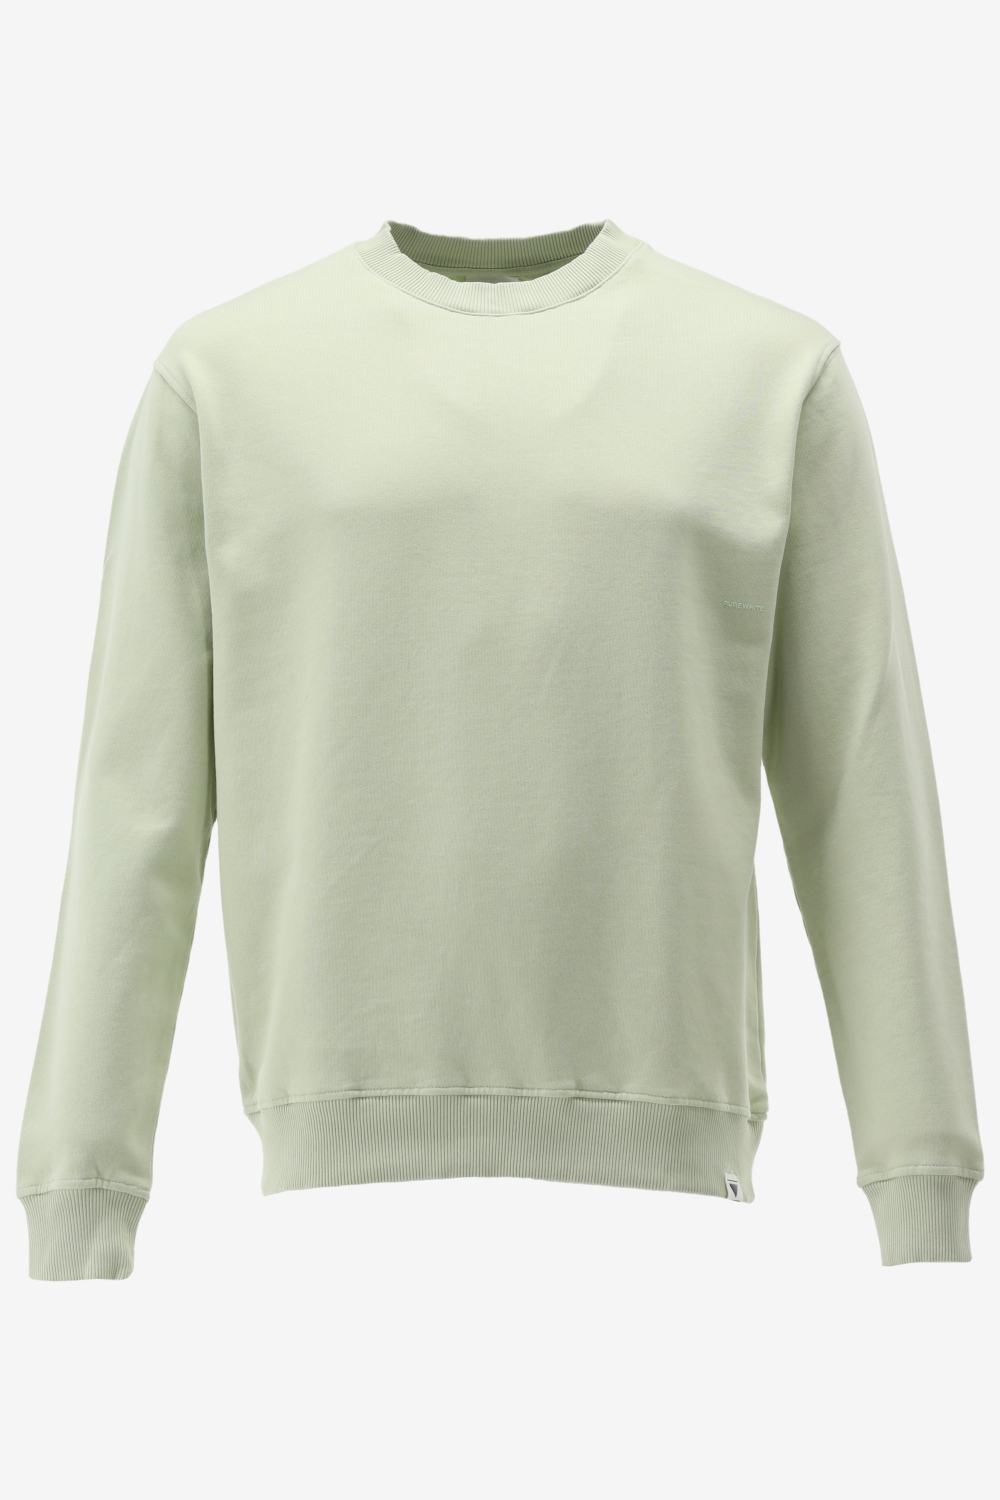 Purewhite - Heren Regular Fit Sweater - Groen - Maat XXL